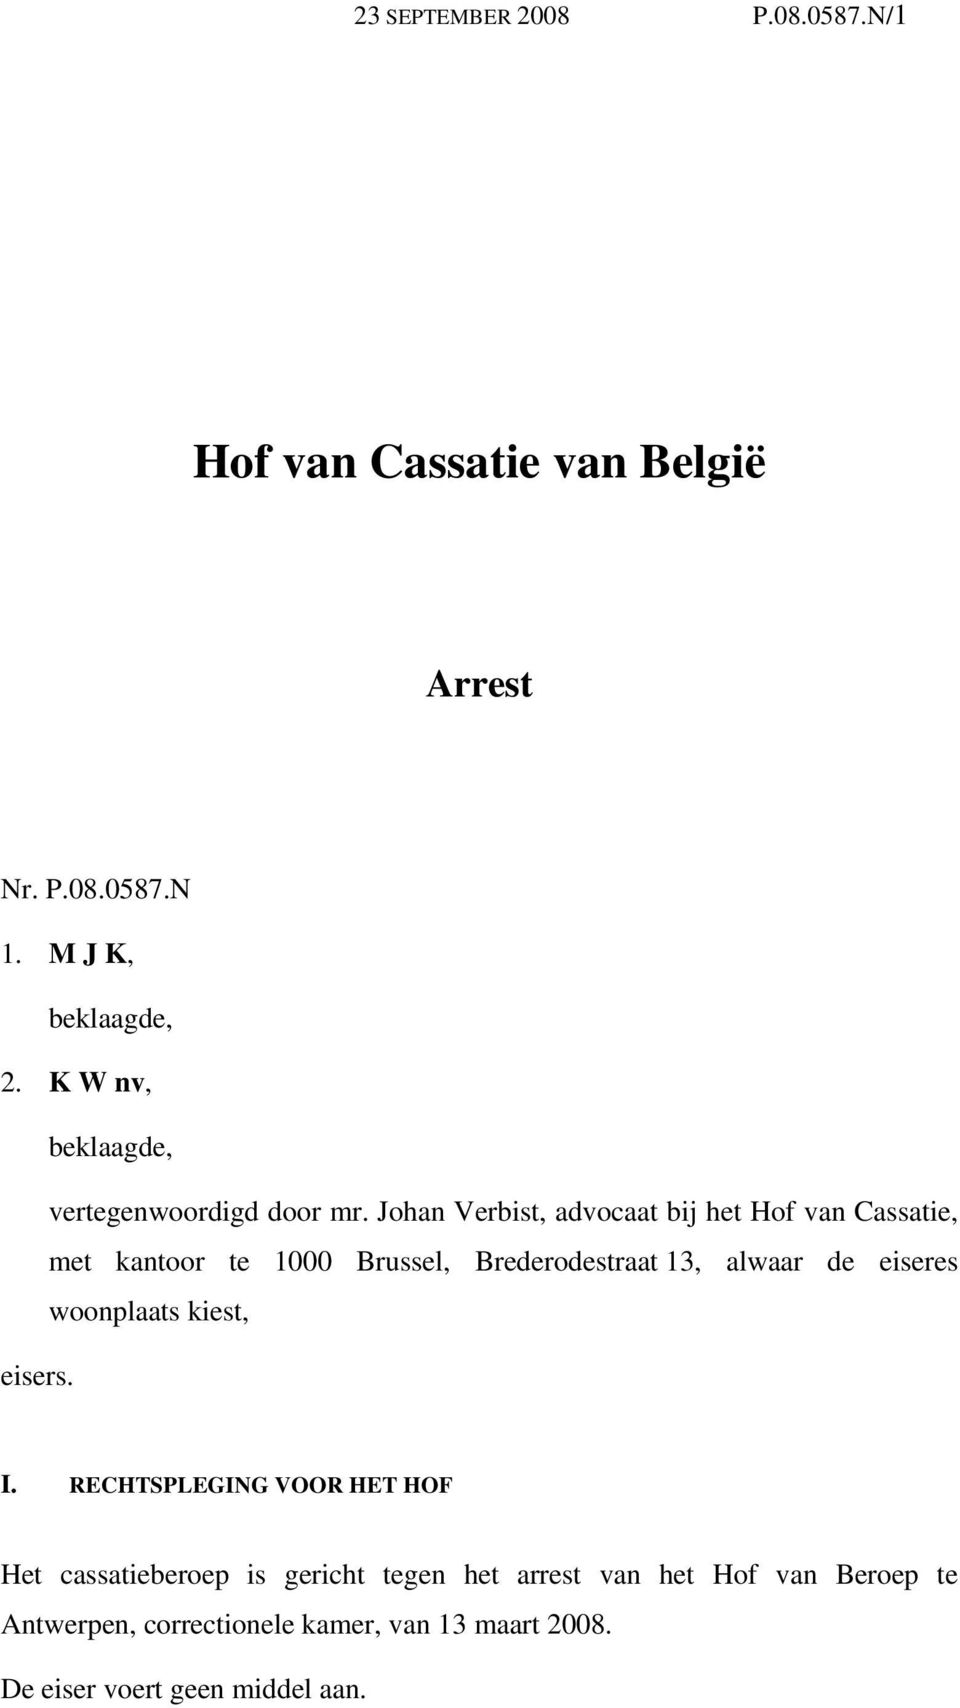 Johan Verbist, advocaat bij het Hof van Cassatie, met kantoor te 1000 Brussel, Brederodestraat 13, alwaar de eiseres